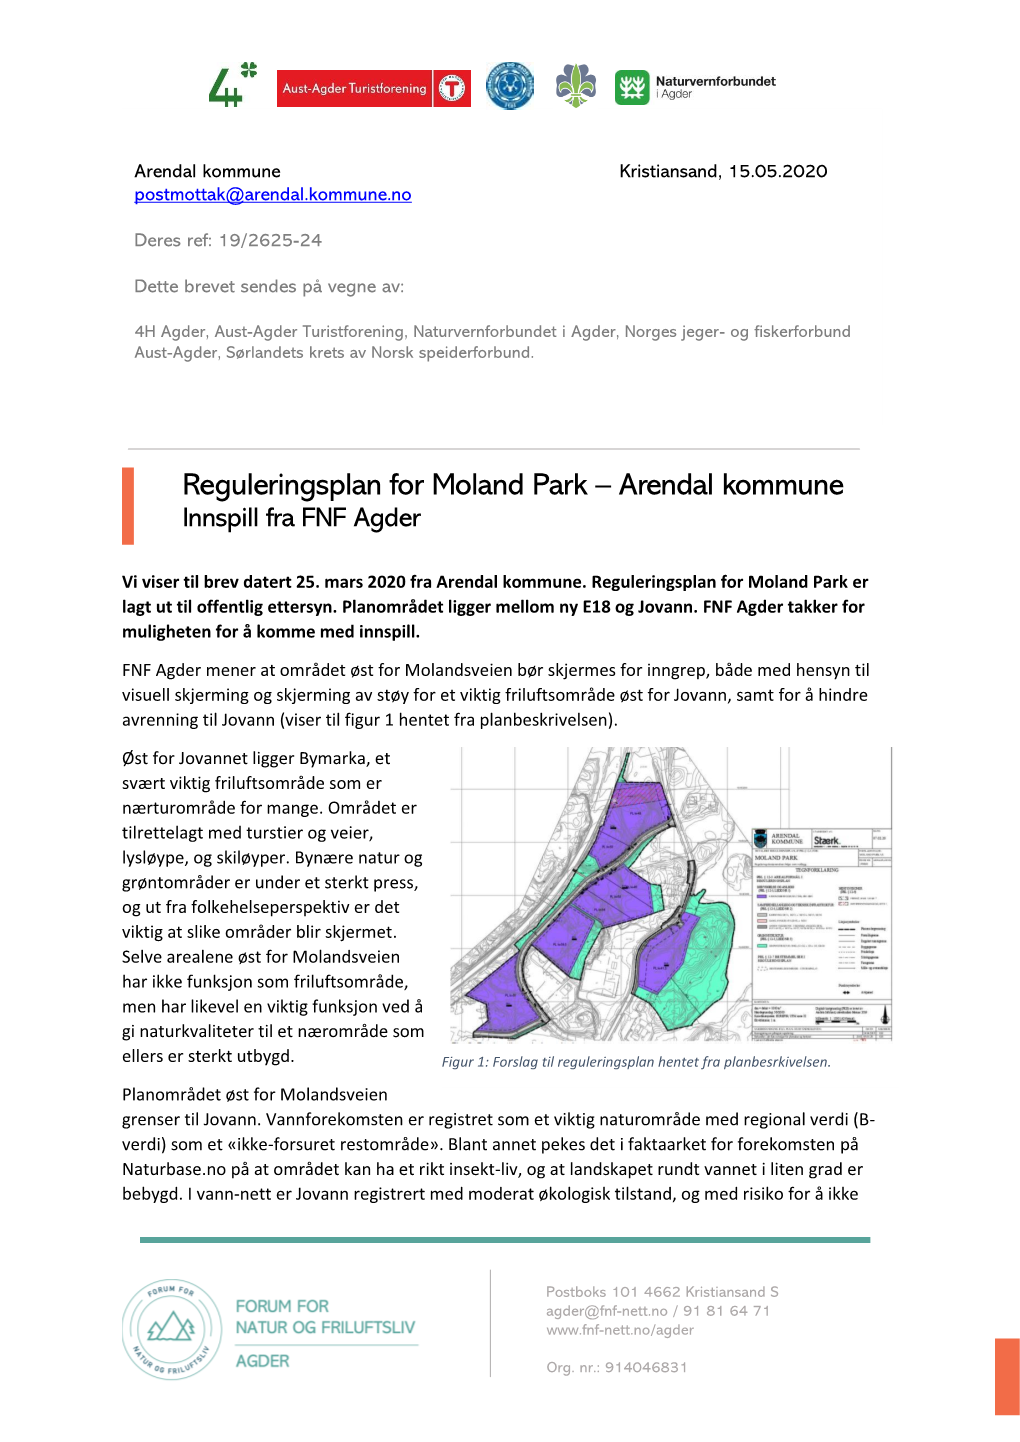 Reguleringsplan for Moland Park – Arendal Kommune Innspill Fra FNF Agder